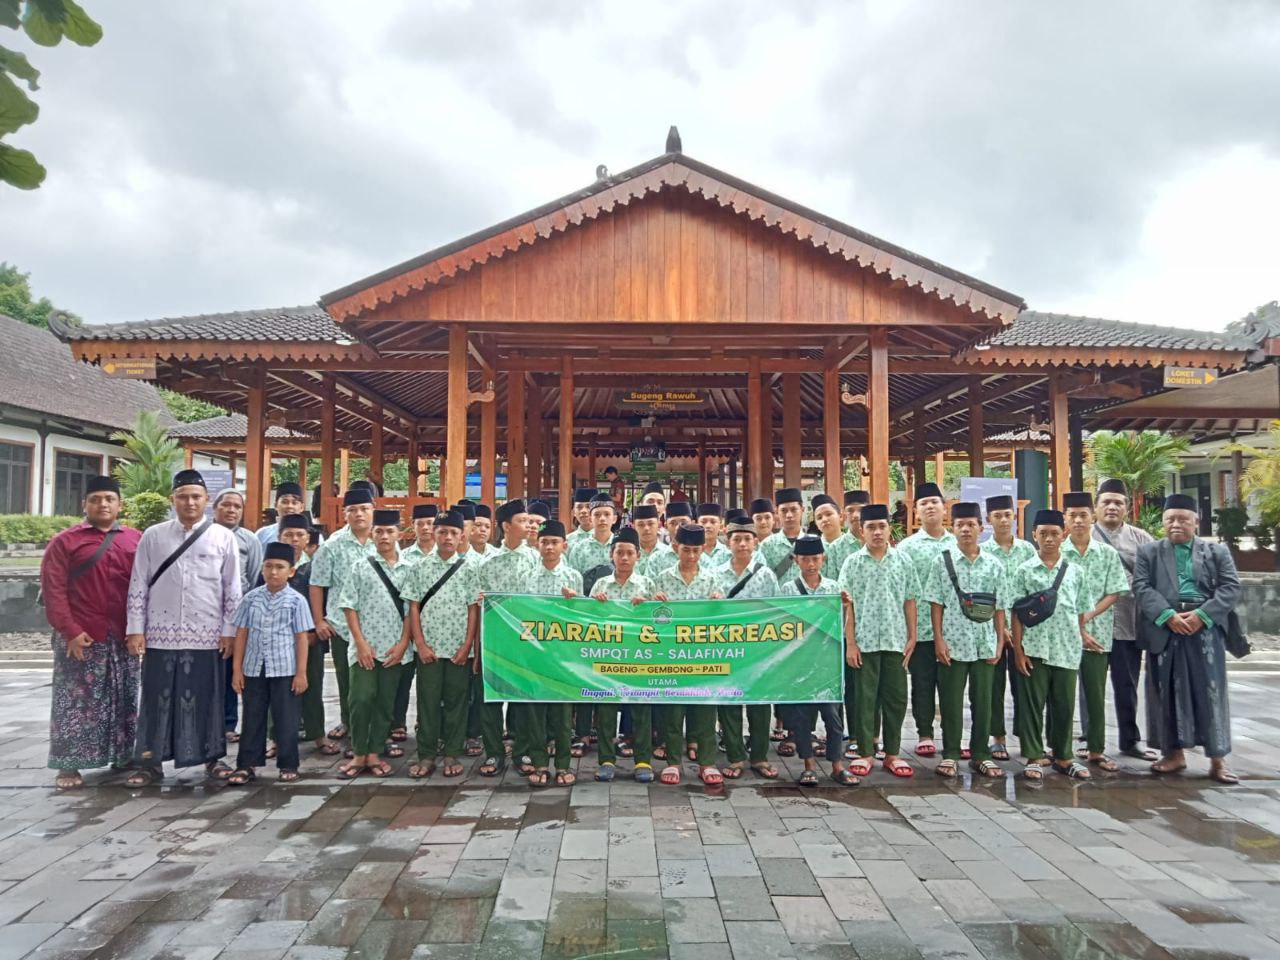 Berita Kegiatan Ziarah dan Rekreasi SMPQT As-Salafiyah di Sunan Kalijaga, Borobudur, dan Gunung Pring